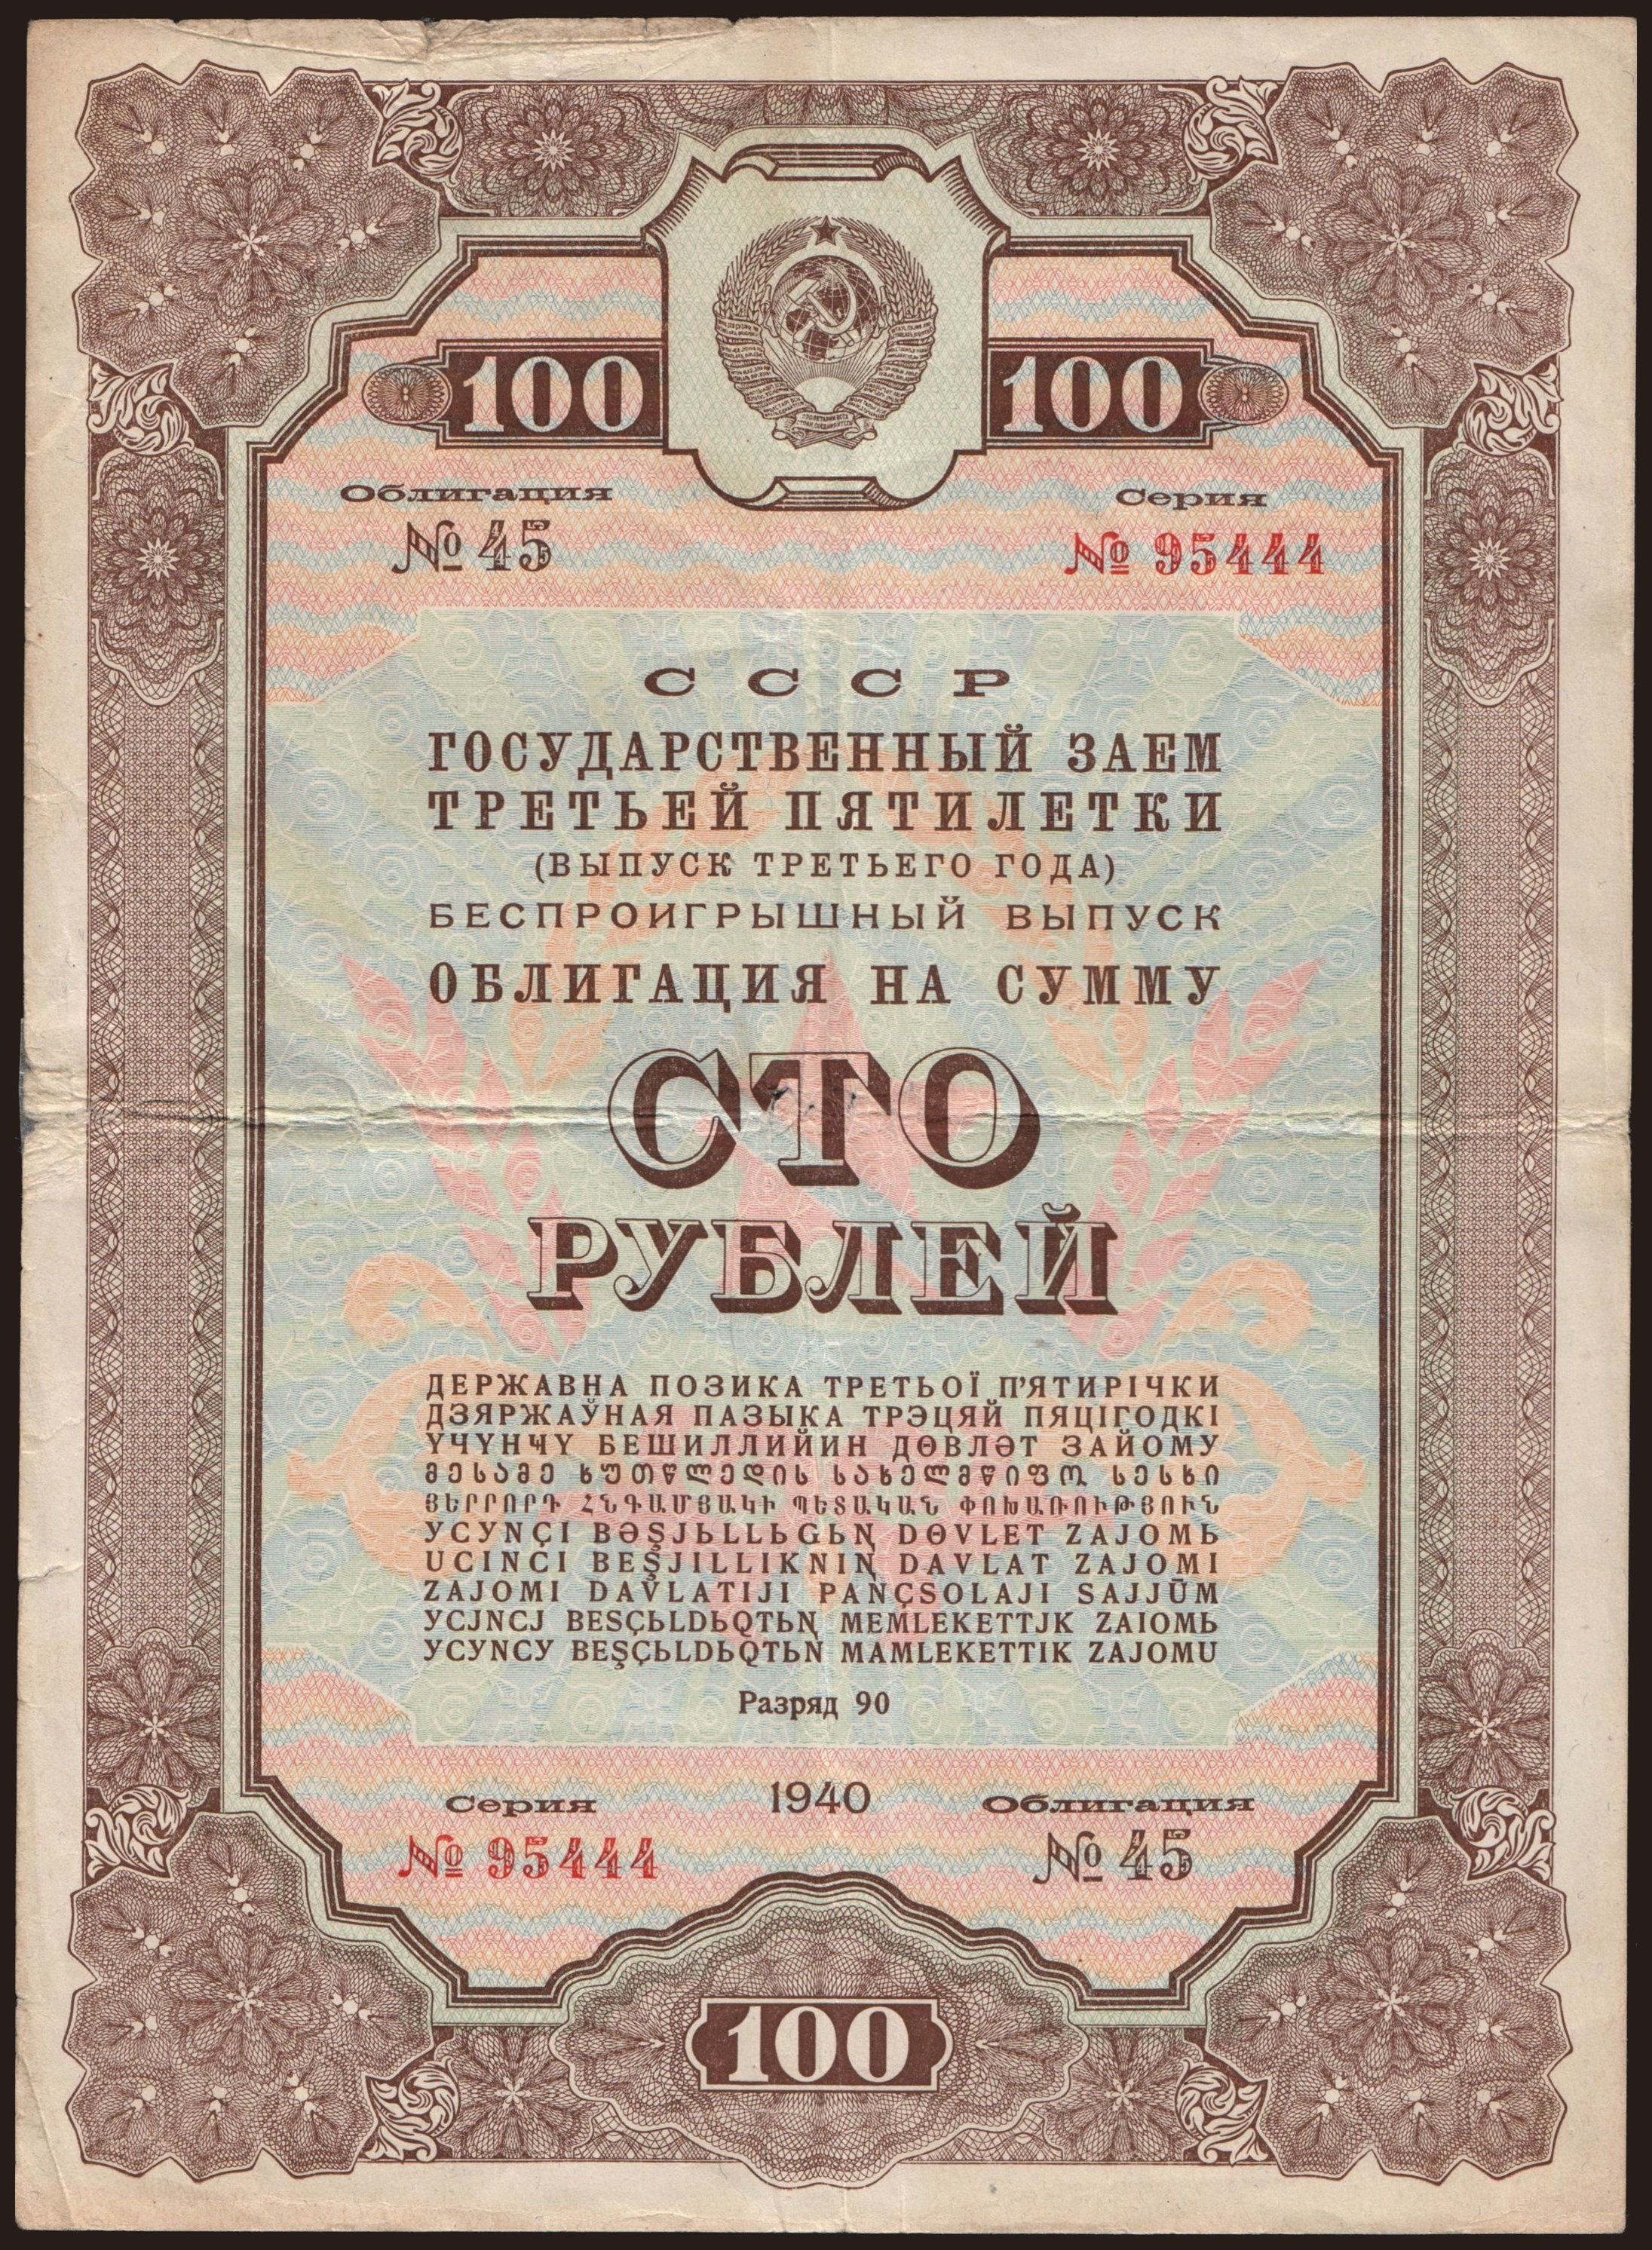 Gosudarstvennyj zaem, 100 rubel, 1940